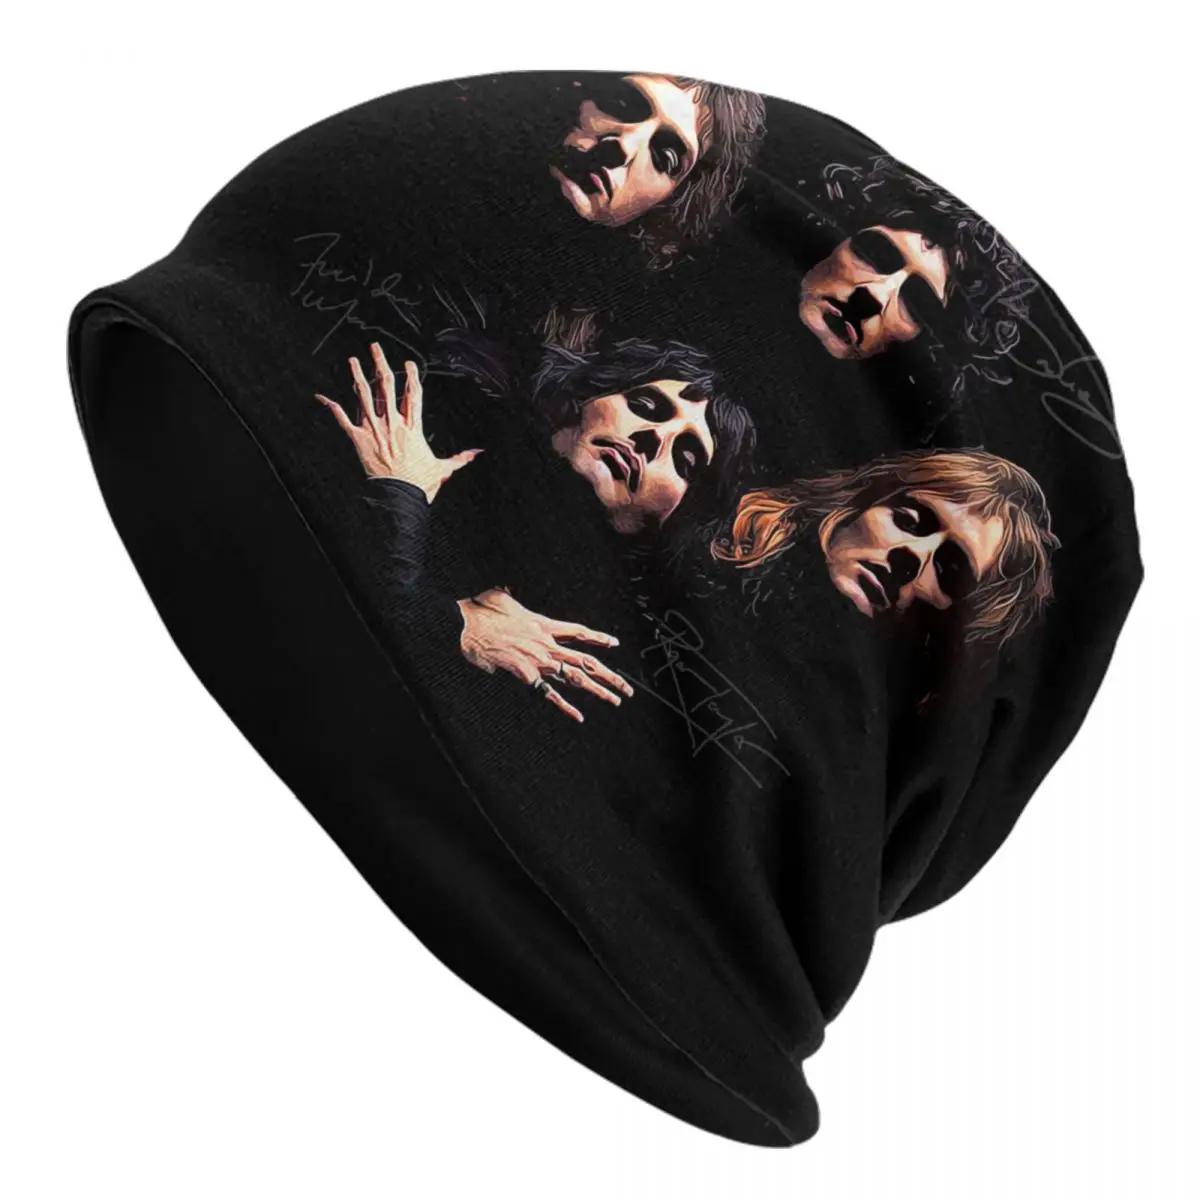 

Freddie Mercury Heavy Metal Skullies Beanies Caps Men Women Unisex Cool Winter Warm Knit Hat Adult Rock Band Bonnet Hats